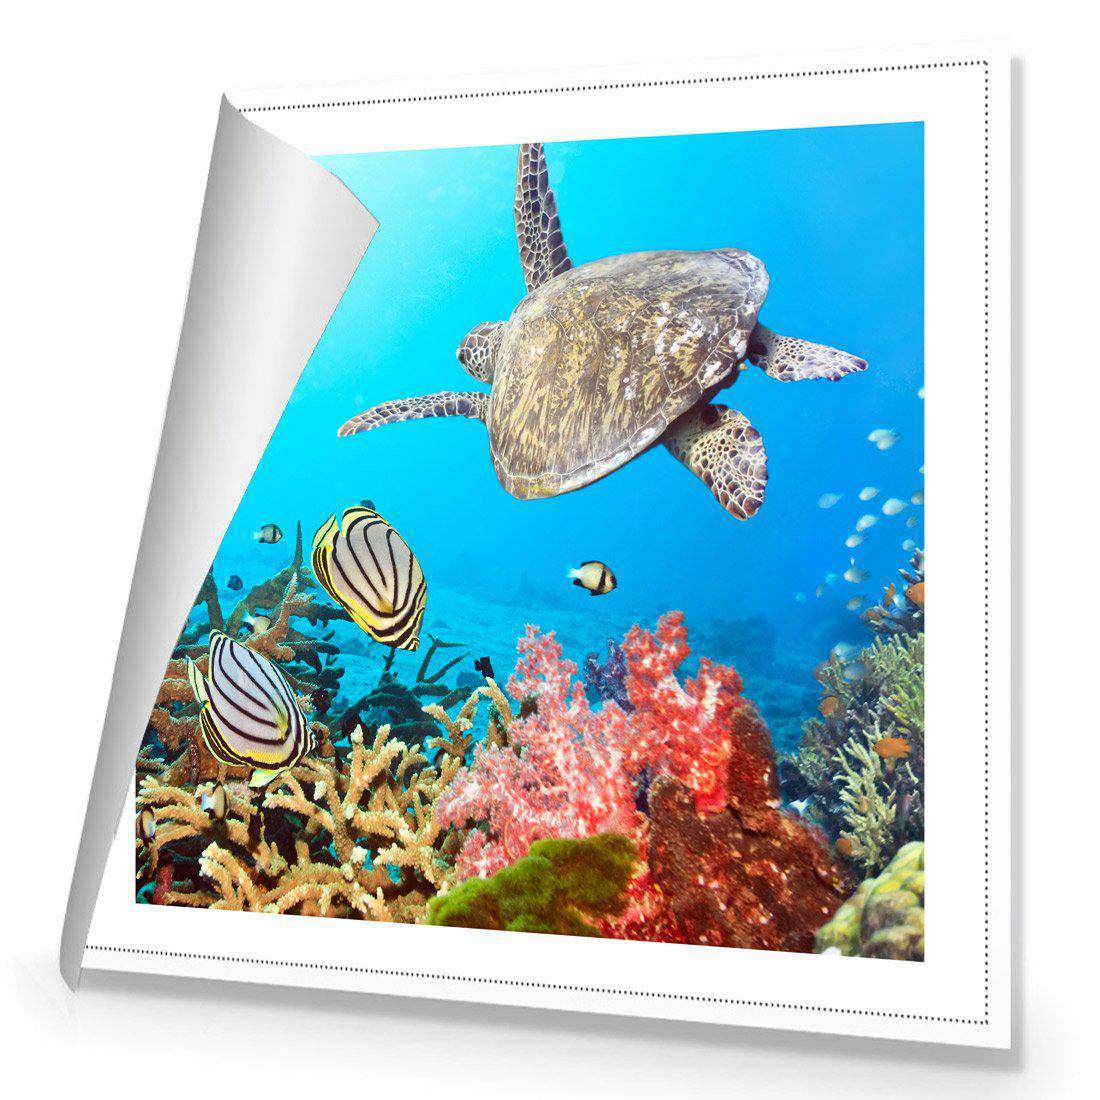 Coral Sea, Square Canvas Art-Canvas-Wall Art Designs-30x30cm-Rolled Canvas-Wall Art Designs